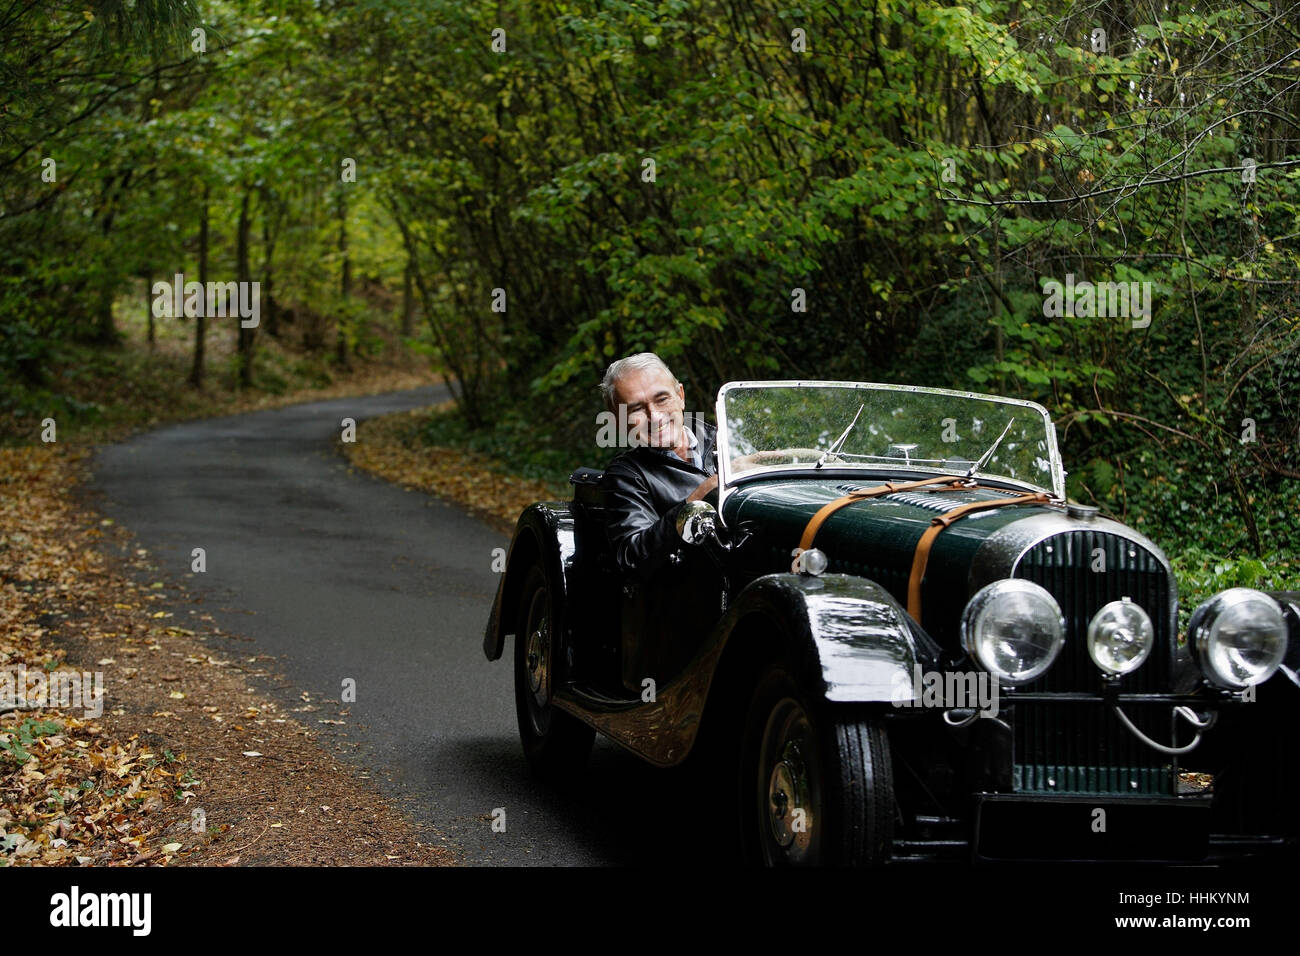 Senior man driving dans antique car Banque D'Images